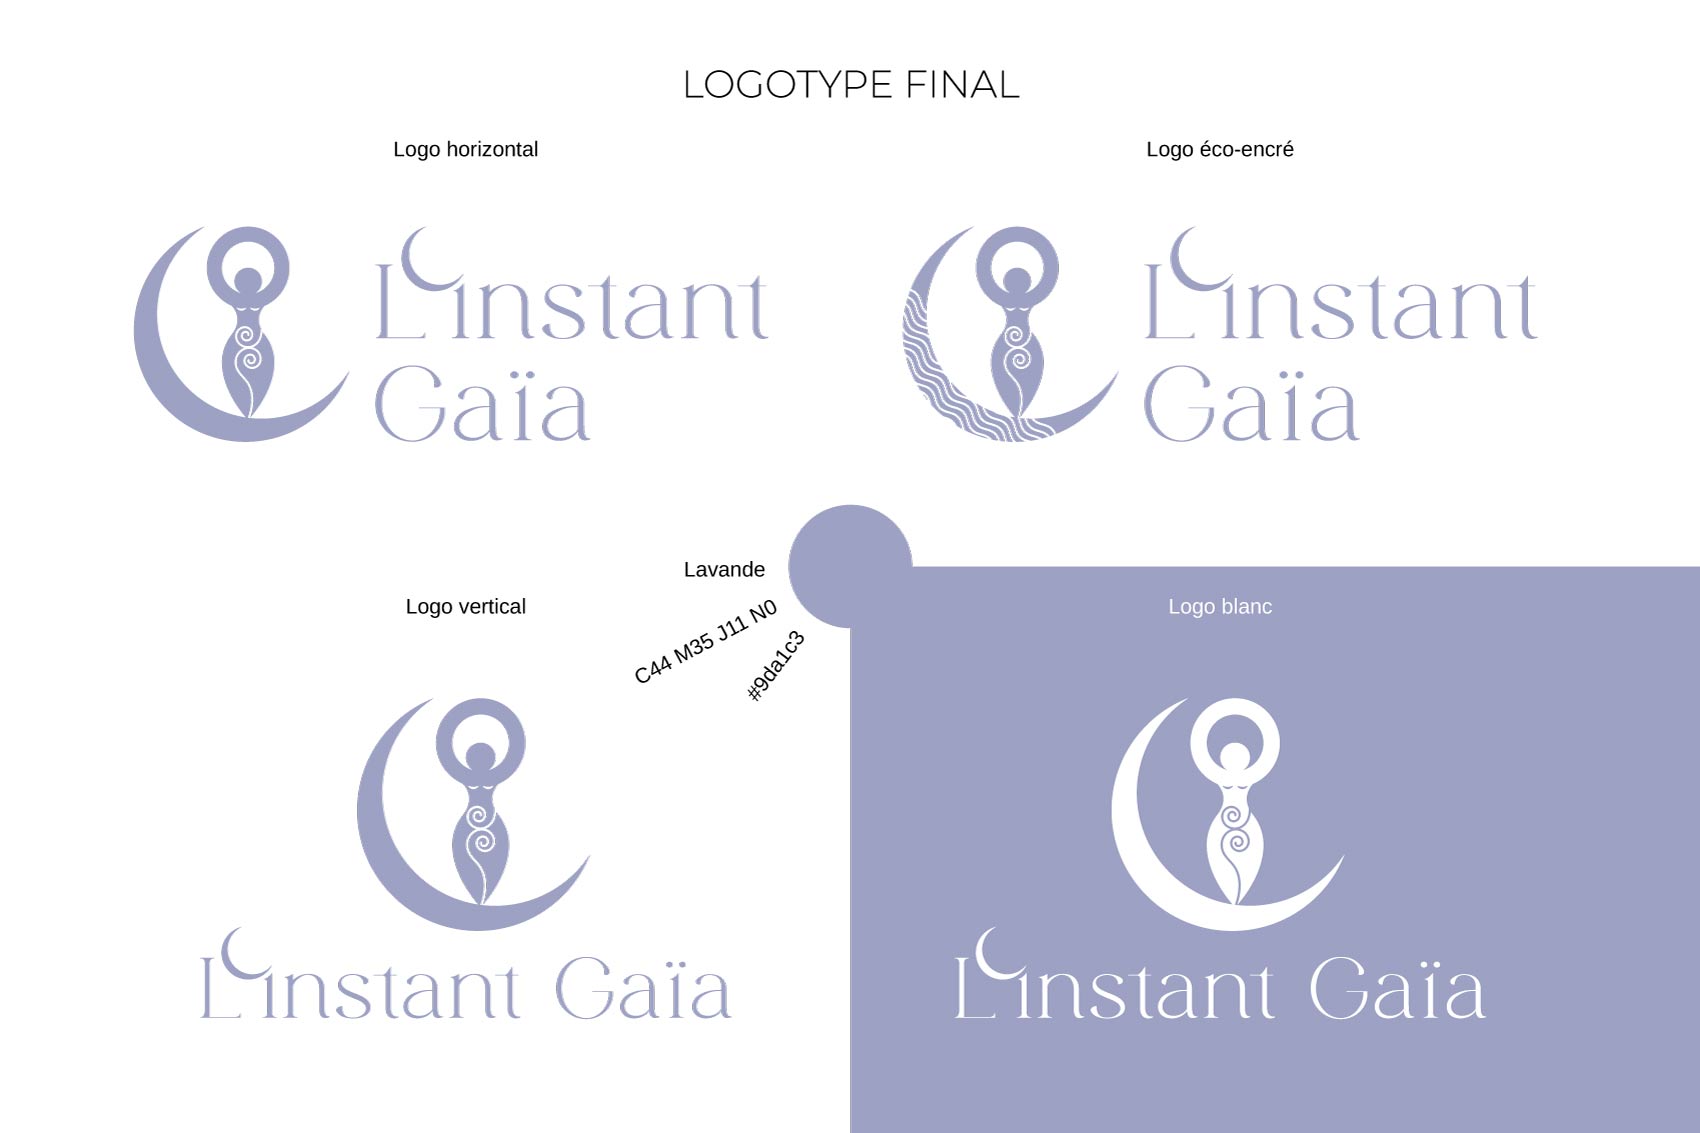 Déclinaisons du logotype de l'Instant Gaïa